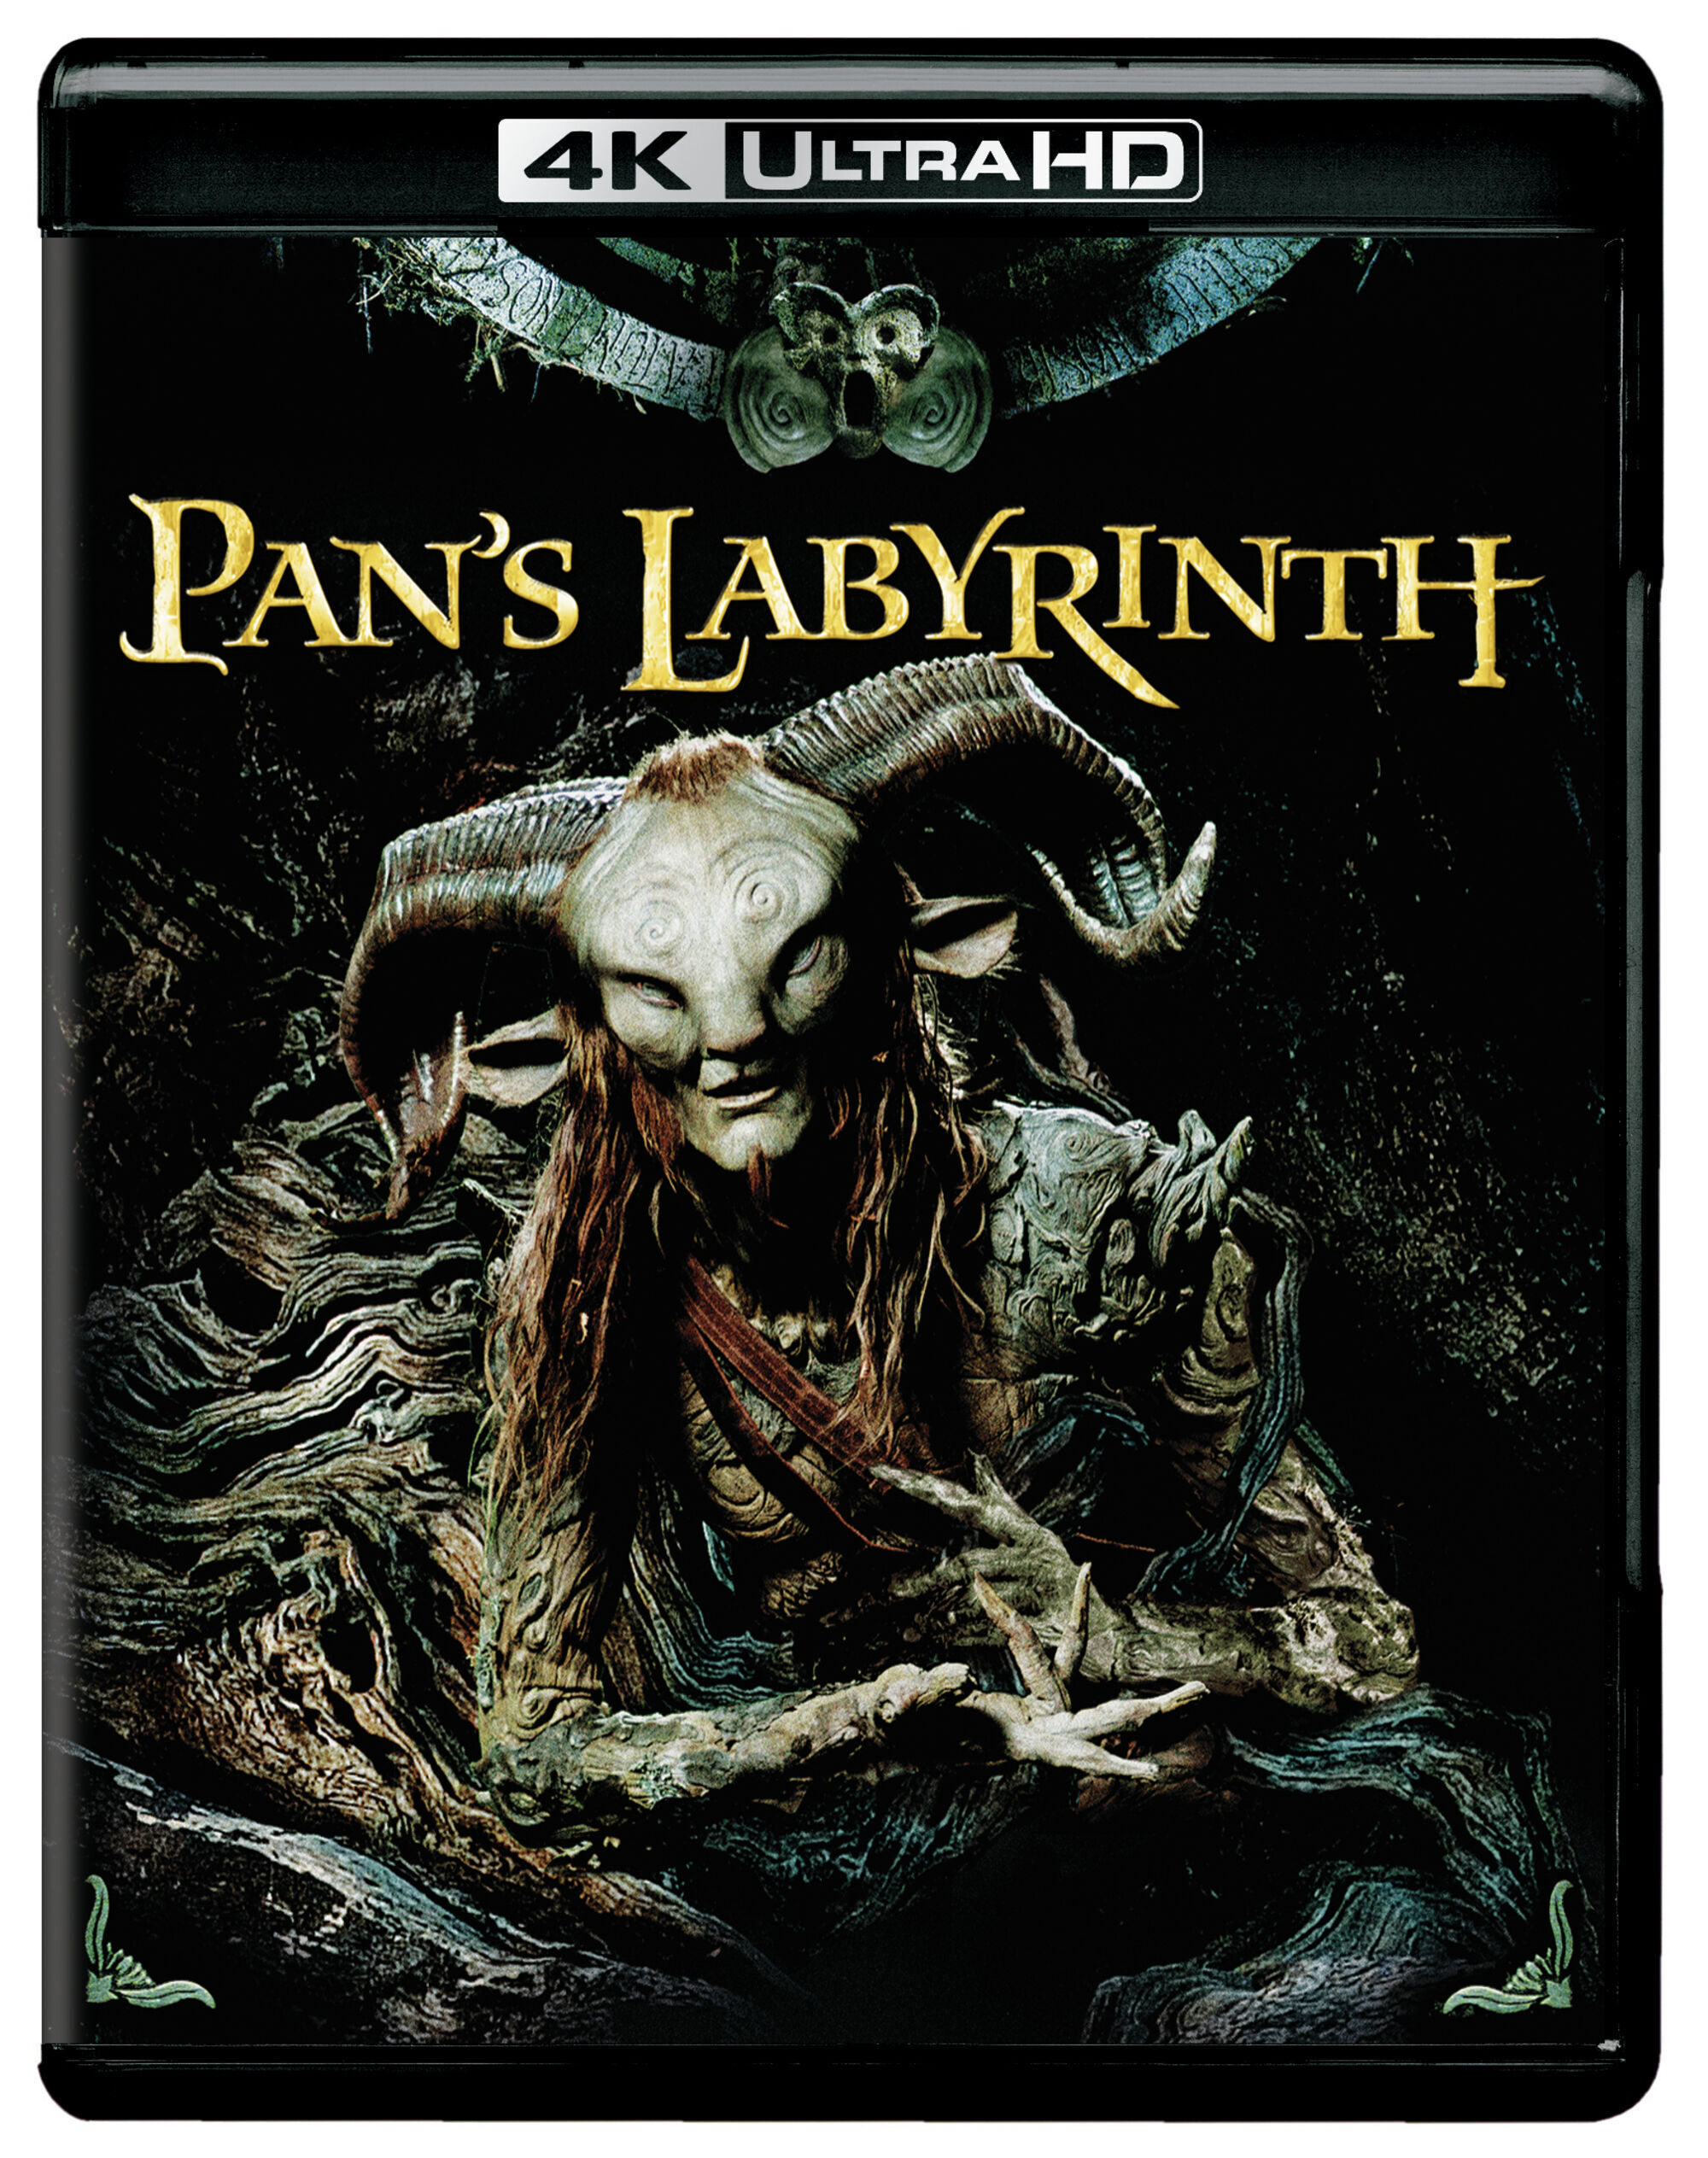 Pan's Labyrinth (4K Ultra HD + Blu-ray) - UHD [ 2006 ]  - Horror Movies On 4K Ultra HD Blu-ray - Movies On GRUV